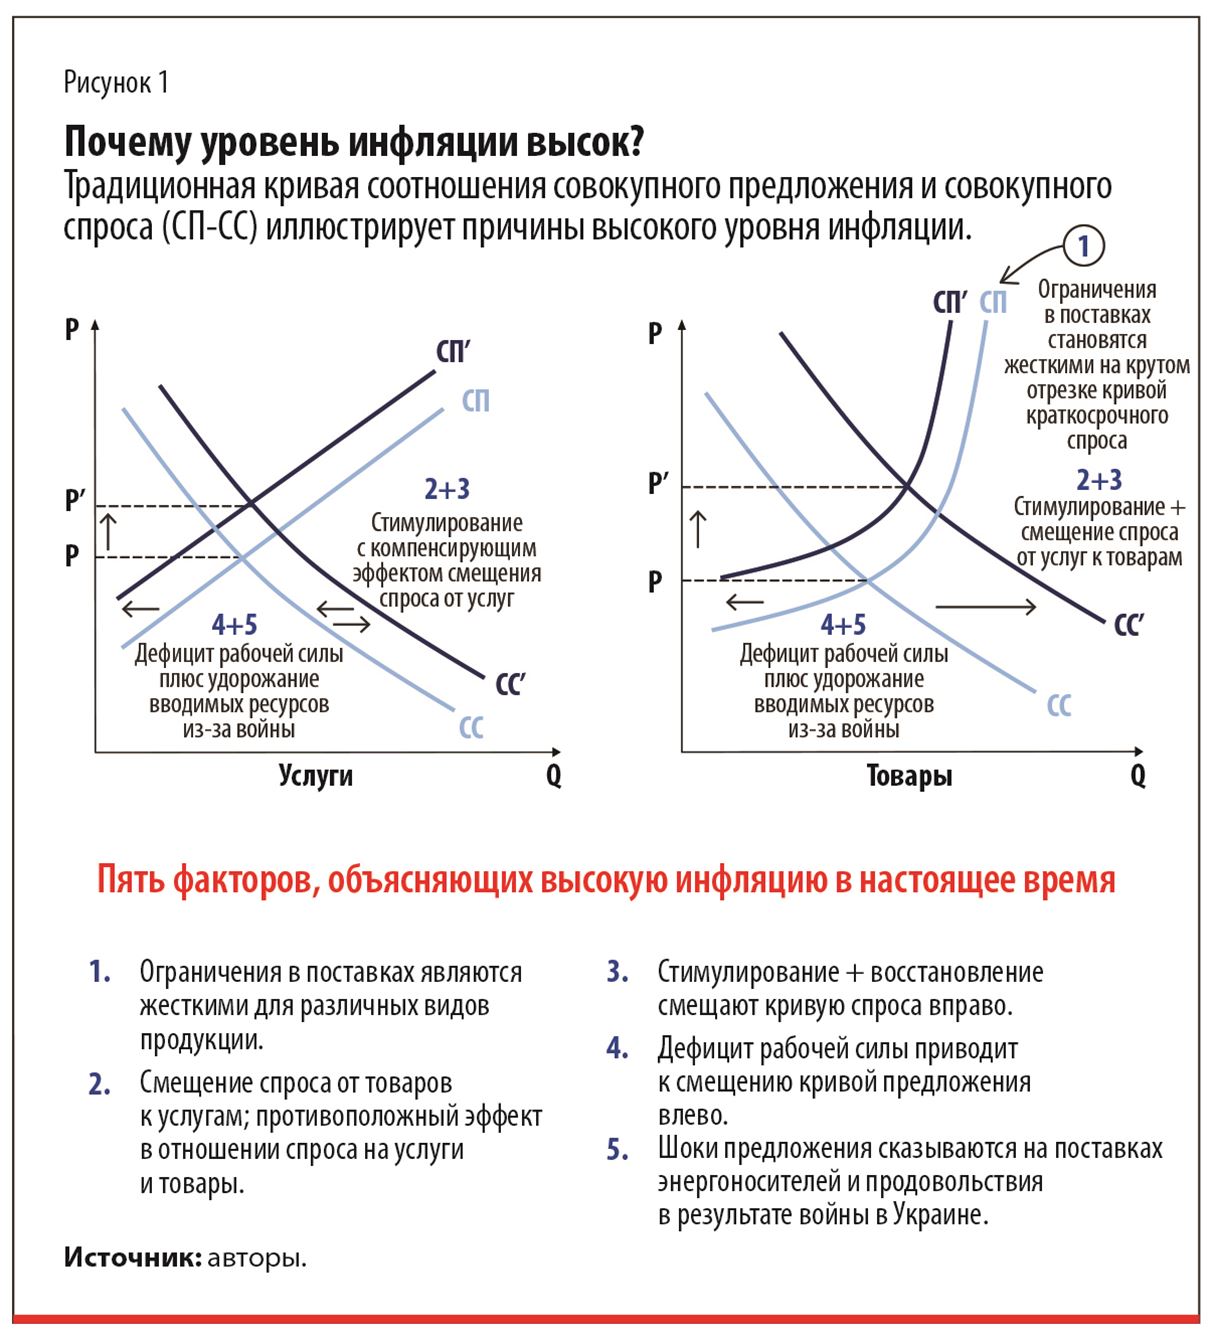 В-пятых, шоки предложения на рынках энергоносителей и продовольствия из-за российского вторжения в Украину. 